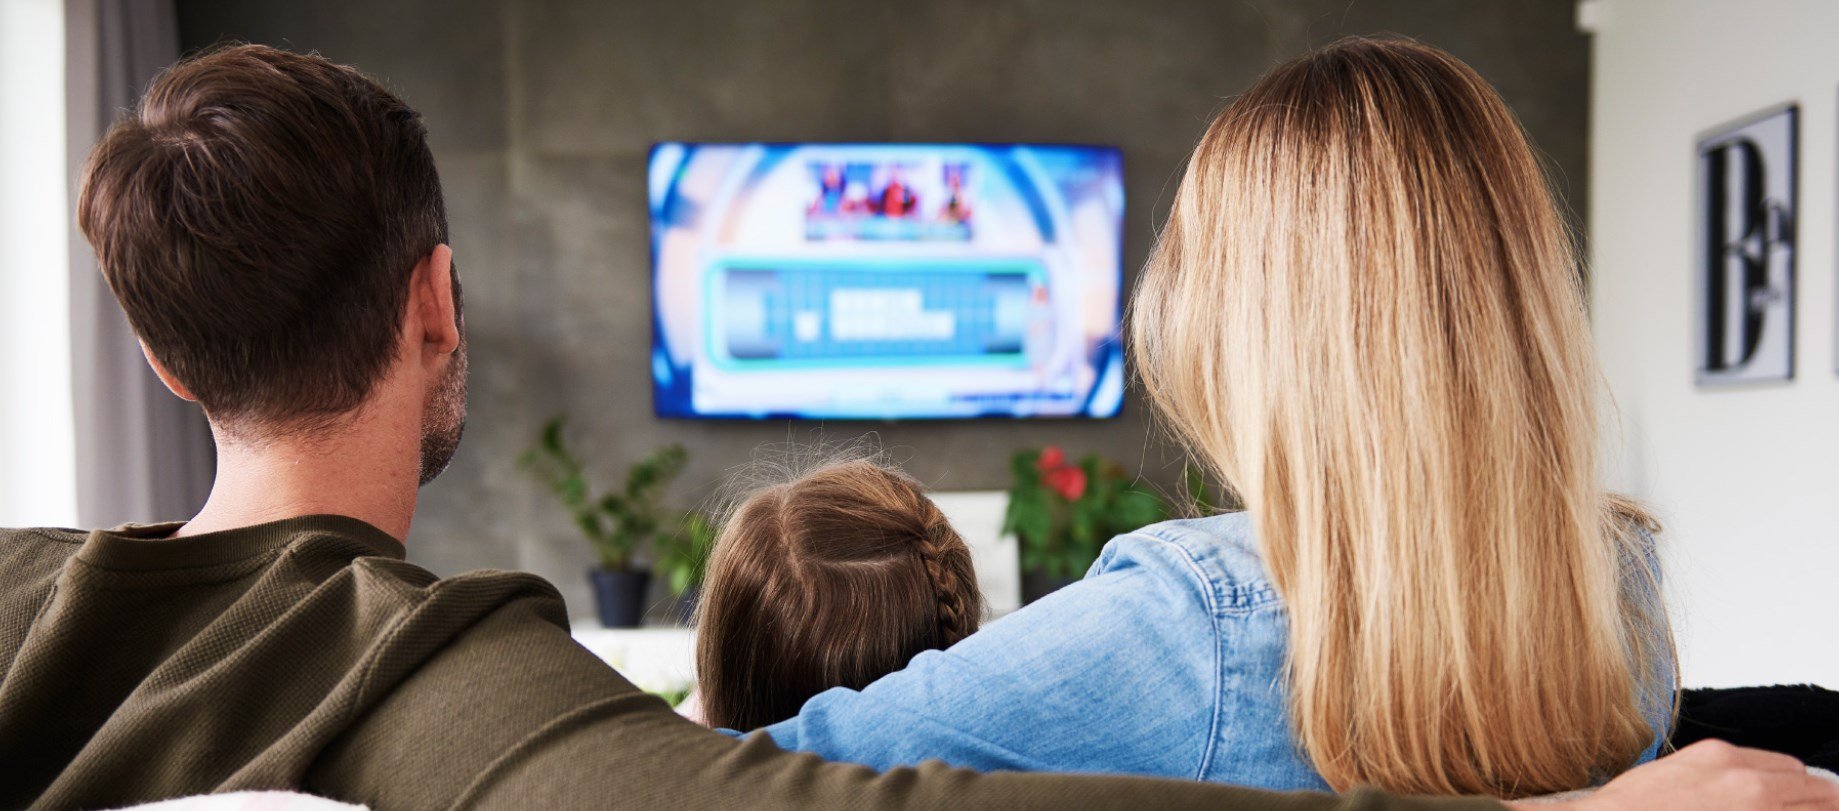 Δωρεάν τηλεοπτική κάλυψη για χιλιάδες νοικοκυριά που βρίσκονται σε «Λευκές Περιοχές»